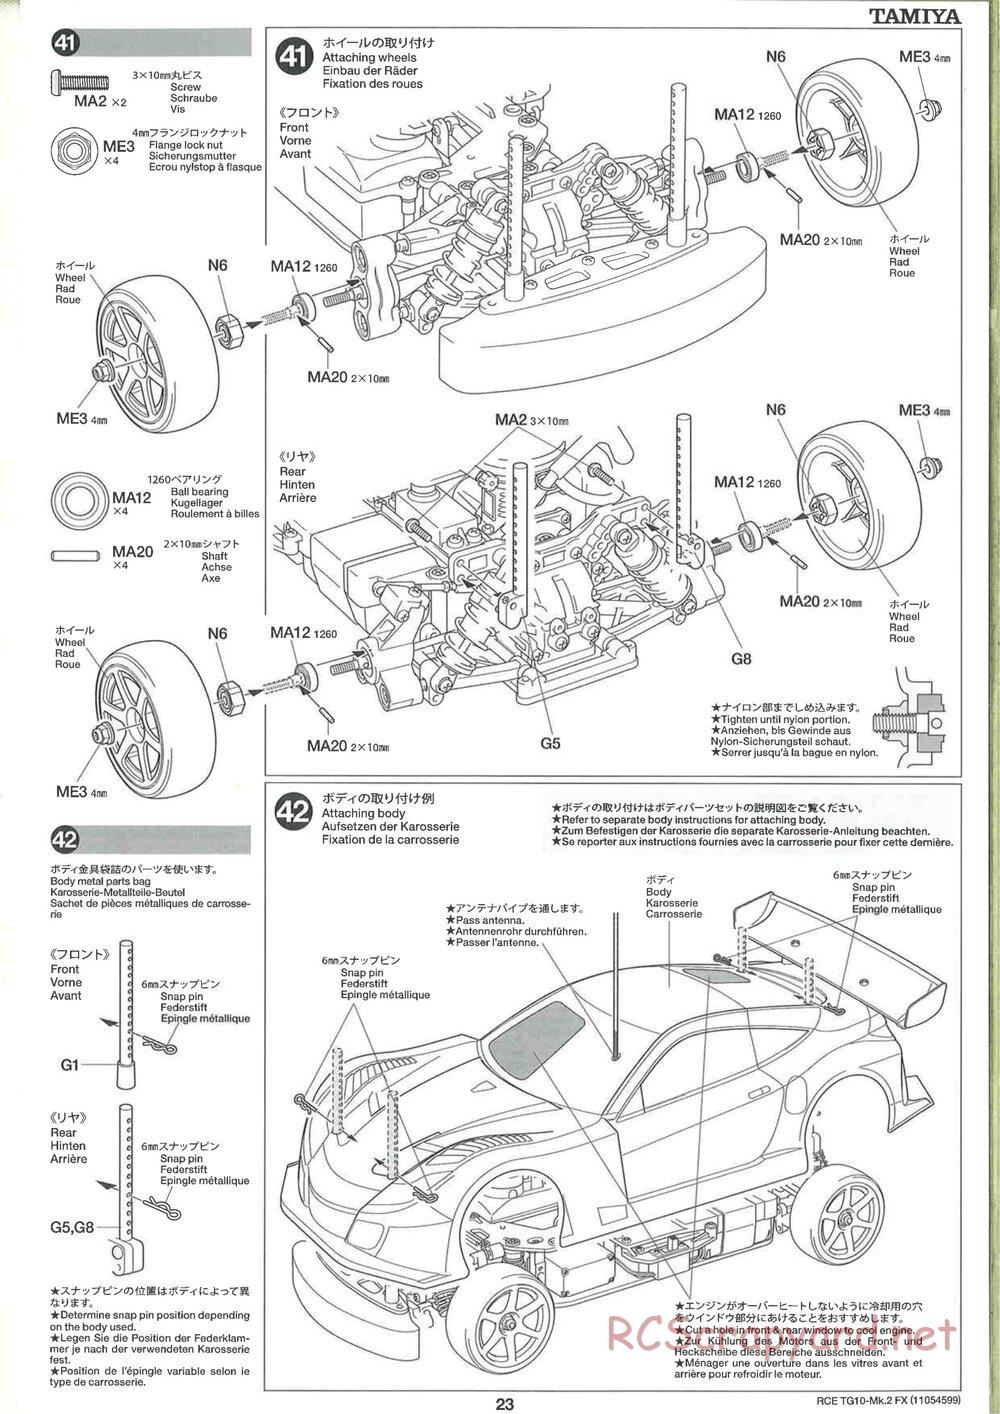 Tamiya - TG10 Mk.2 FX Chassis - Manual - Page 23